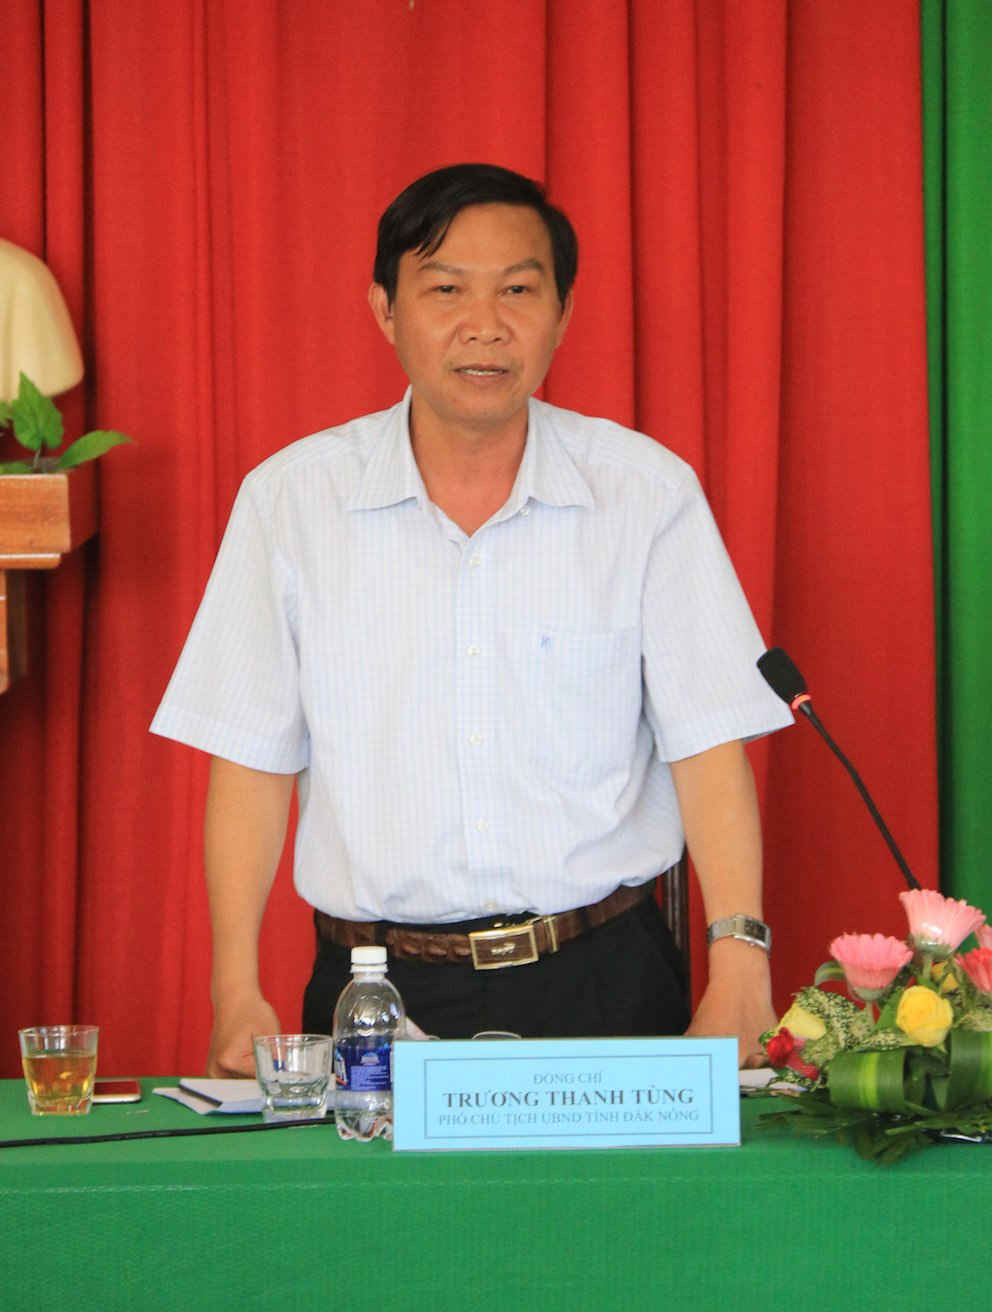 Ông Trương Thanh Tùng - Phó Chủ tịch UBND tỉnh Đắk Nông chỉ đạo các sở, ban ngành, UBND các huyện chấn chỉnh tình trạng cán bộ cơ sở gây phiền hà cho người dân